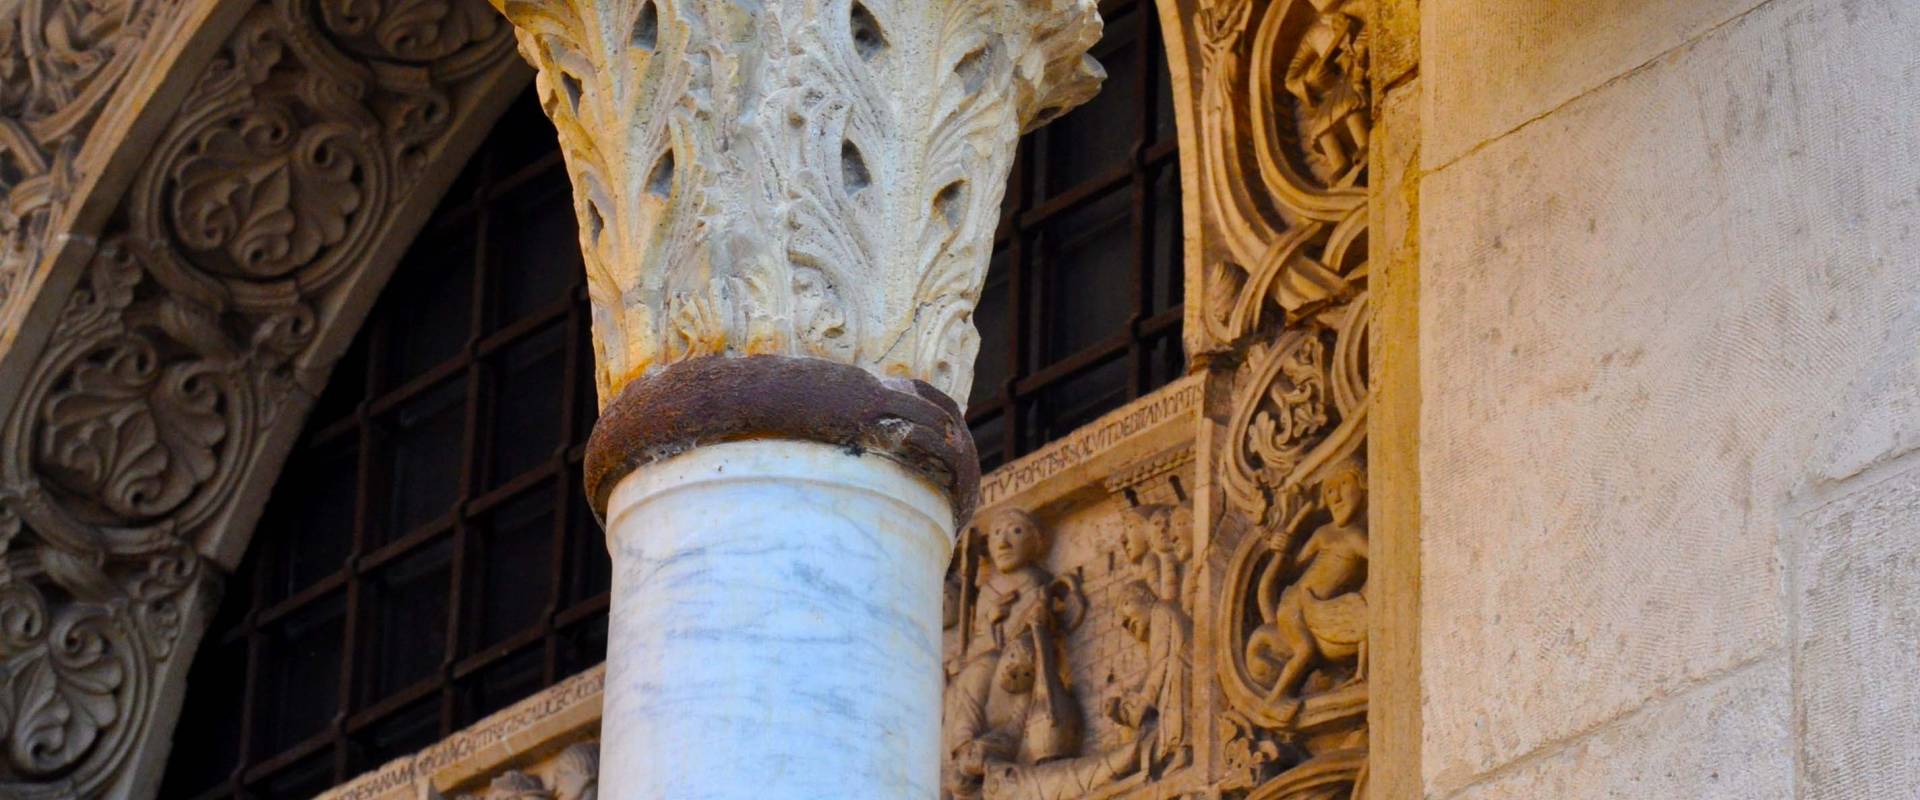 Capitello Duomo di Modena, e scorcio Porta dei Principi foto di Chiara Salazar Chiesa